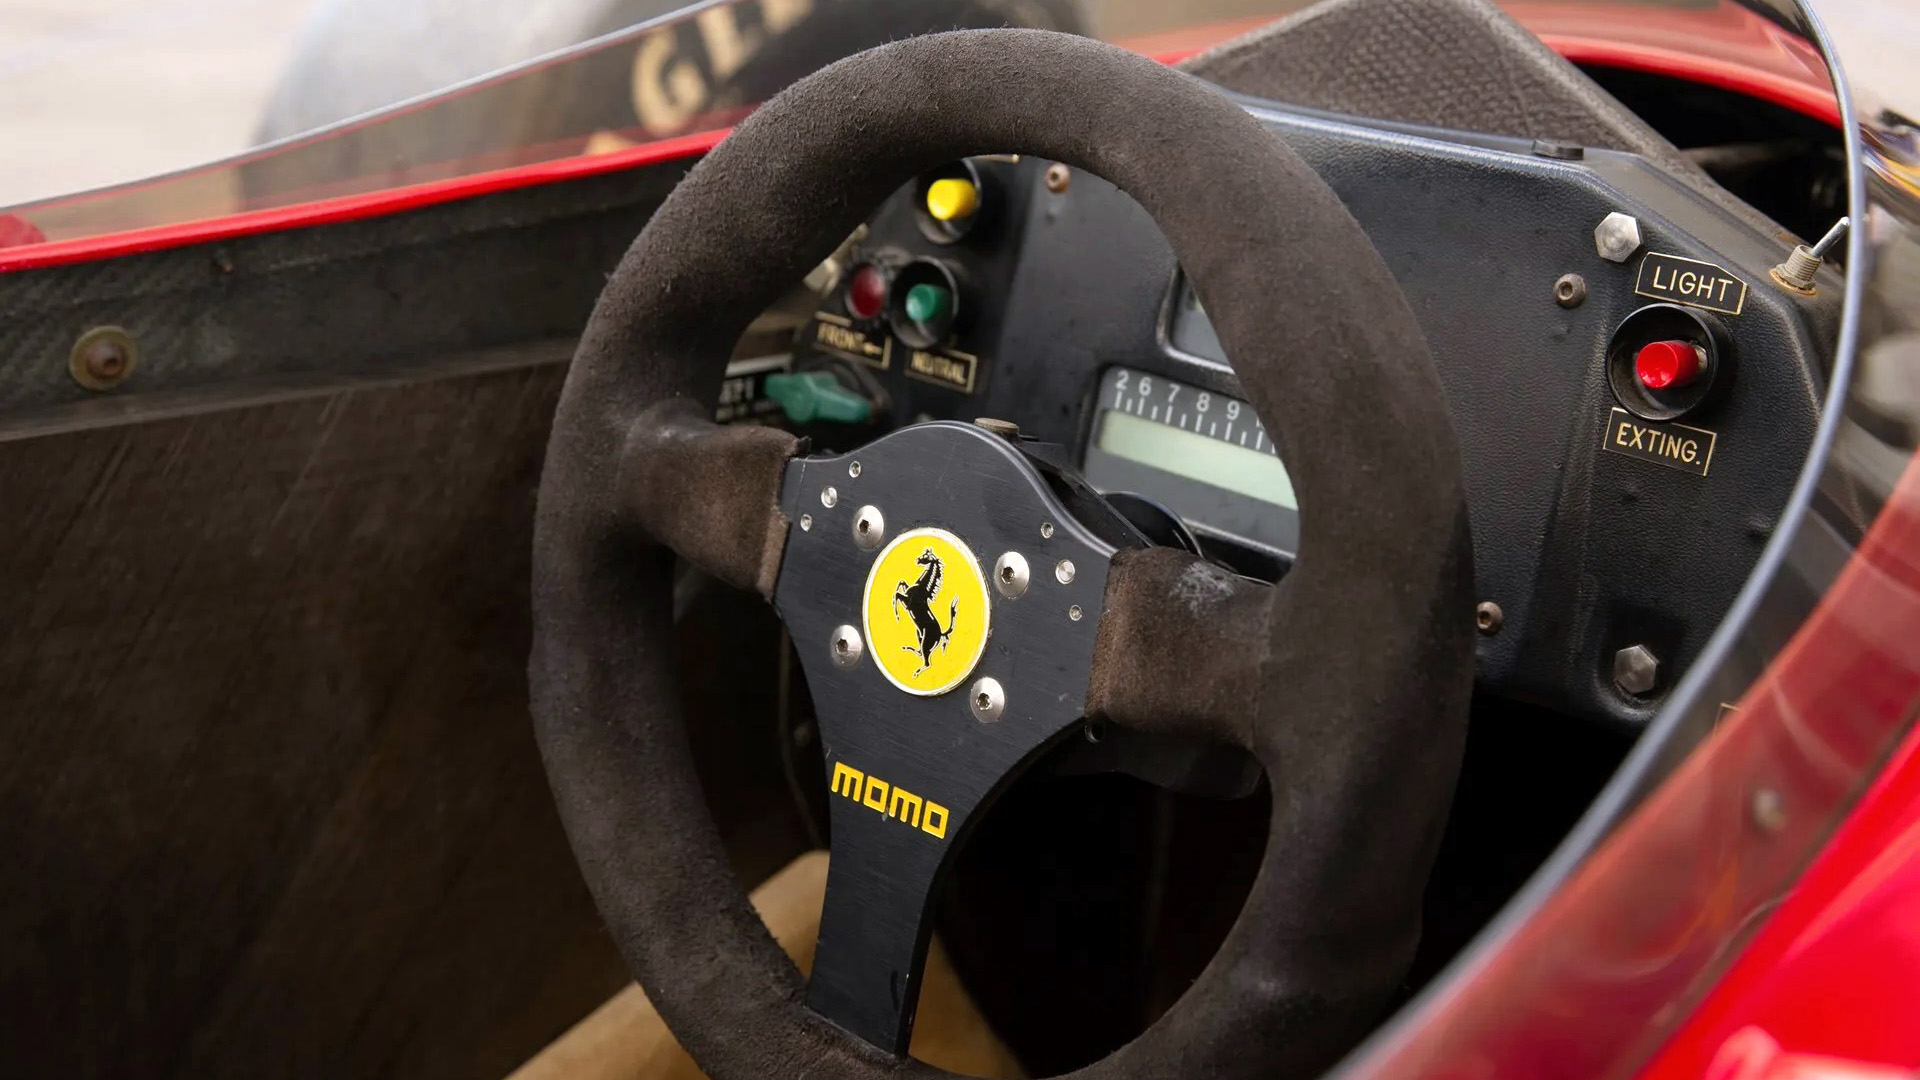 Detrás del volante de Mansell en la Ferrari 640, las dos palancas permitían hacer los cambios de marcha. Fue el primer F1 en adoptar el sistema que tienen todos los autos de carrera de Fórmula en el mundo entero